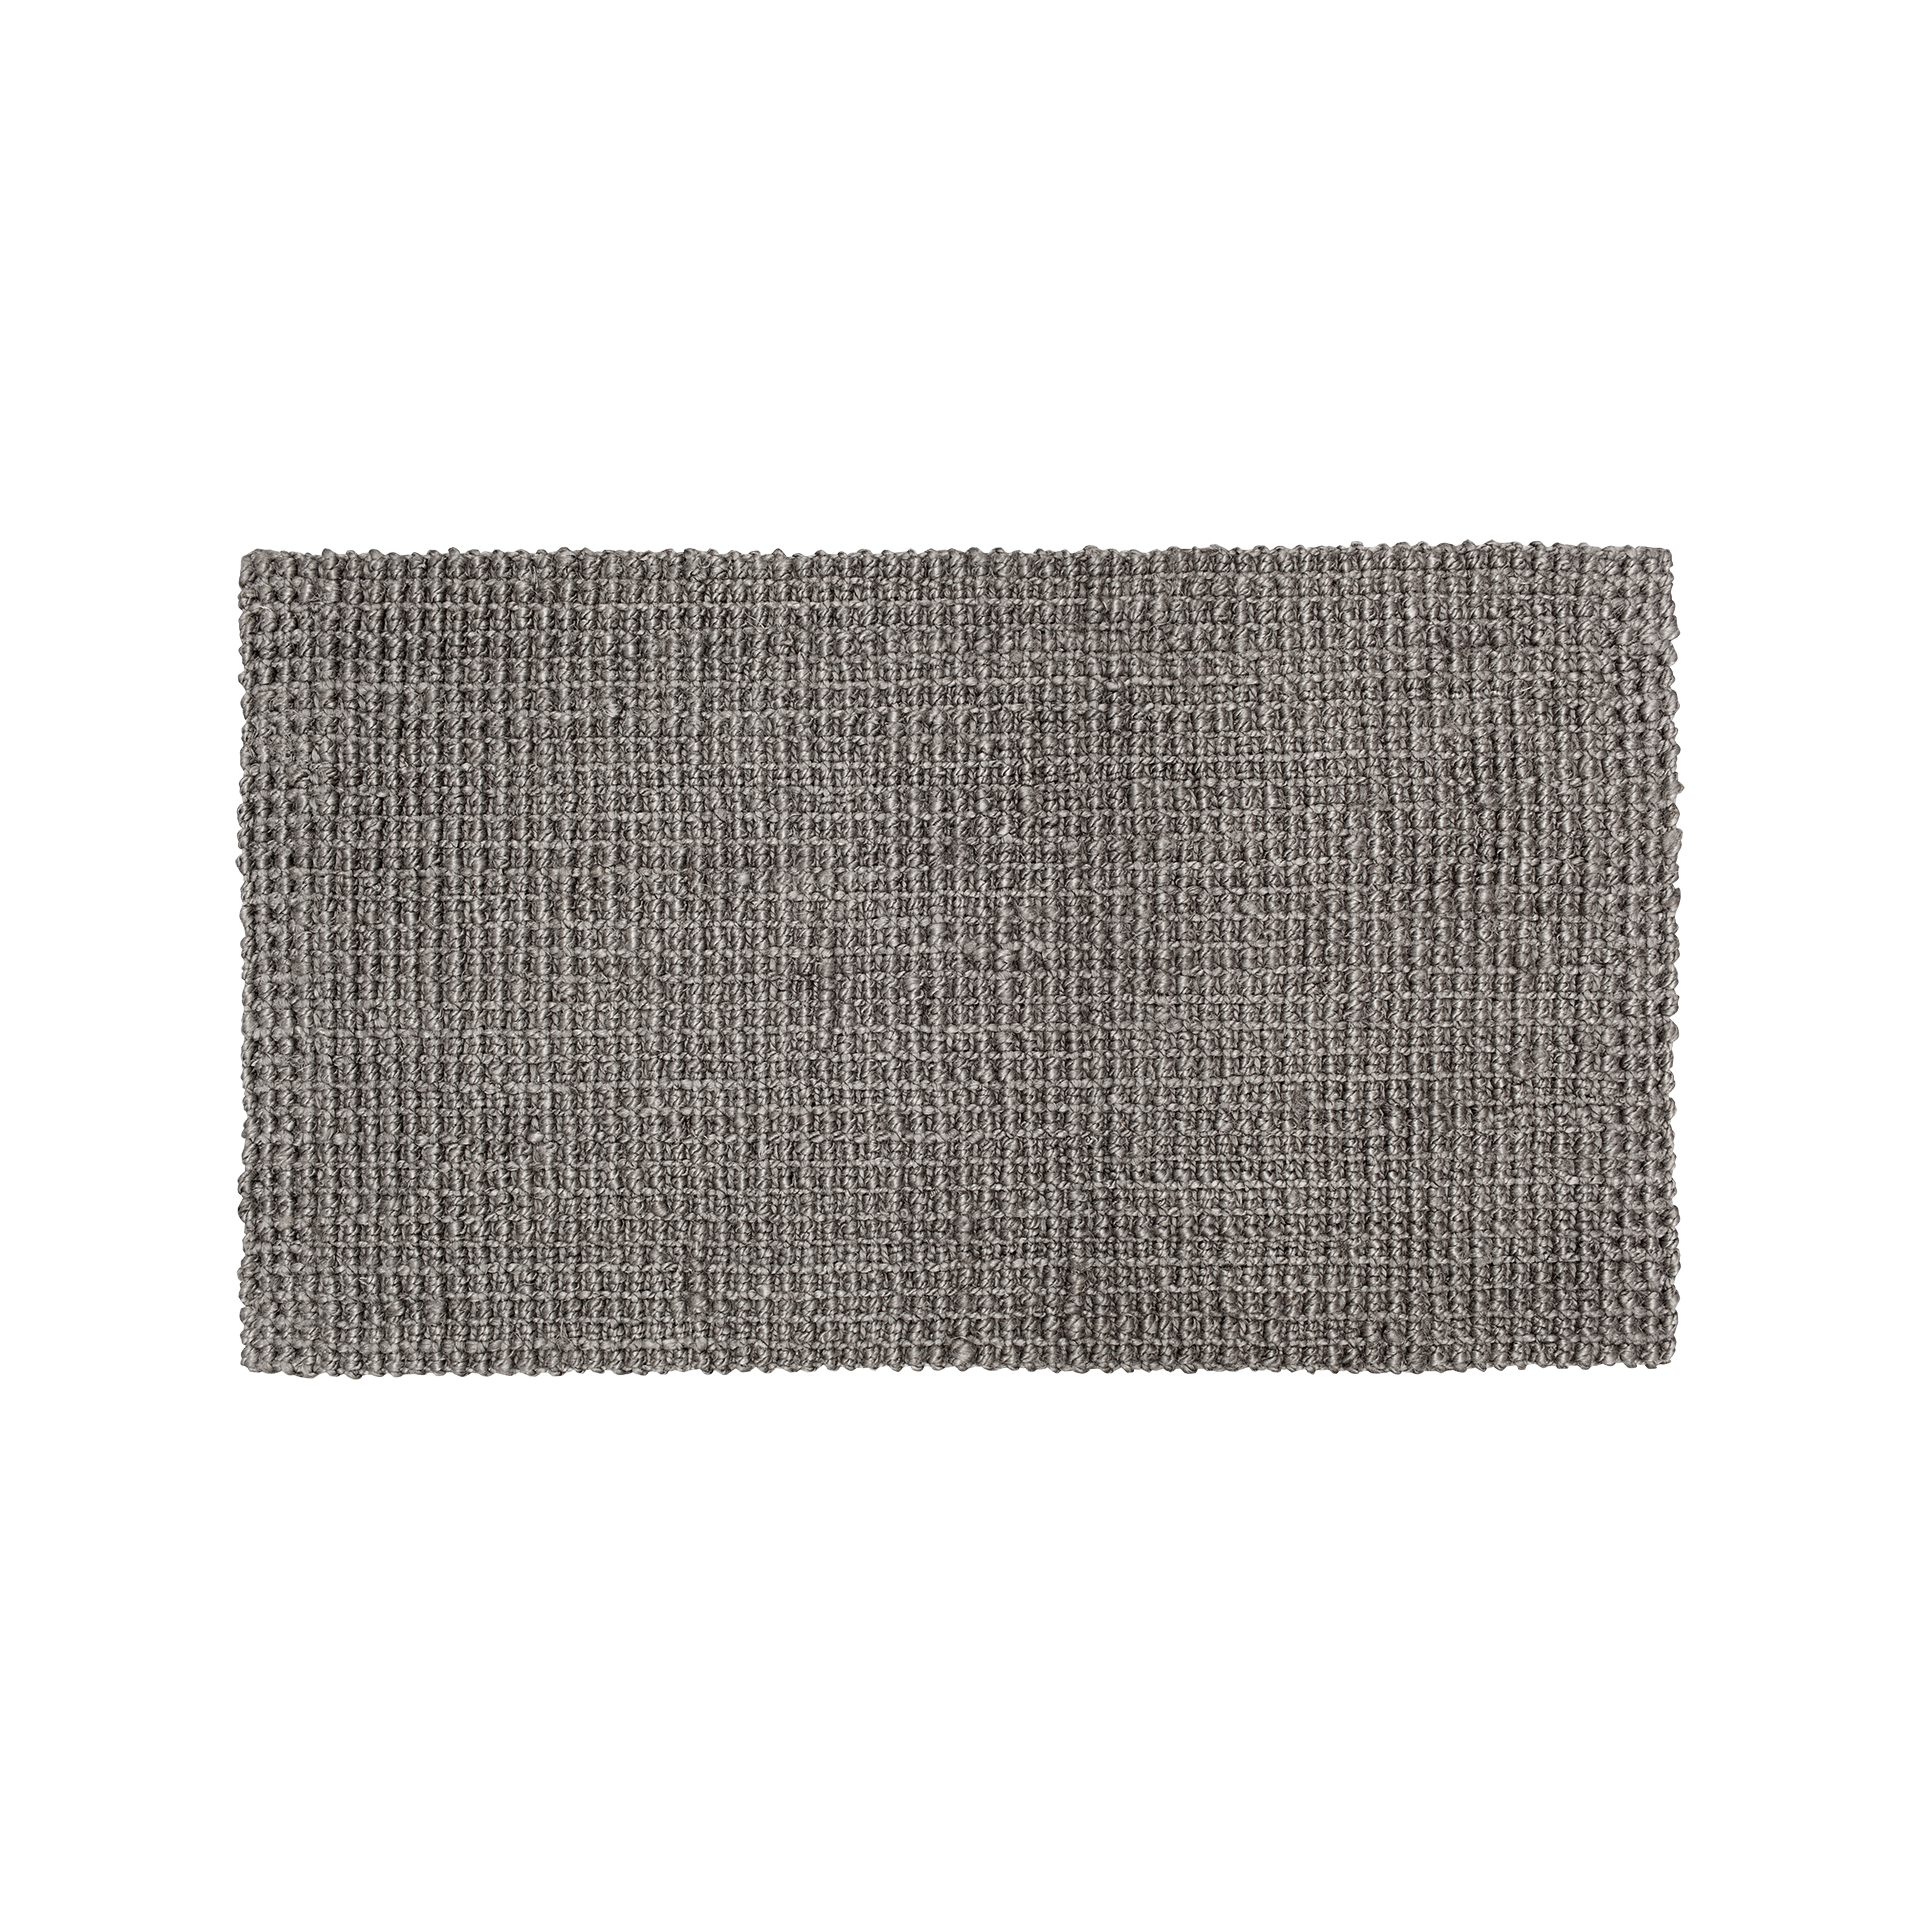 Doormat Julia cement grey 70x120cm